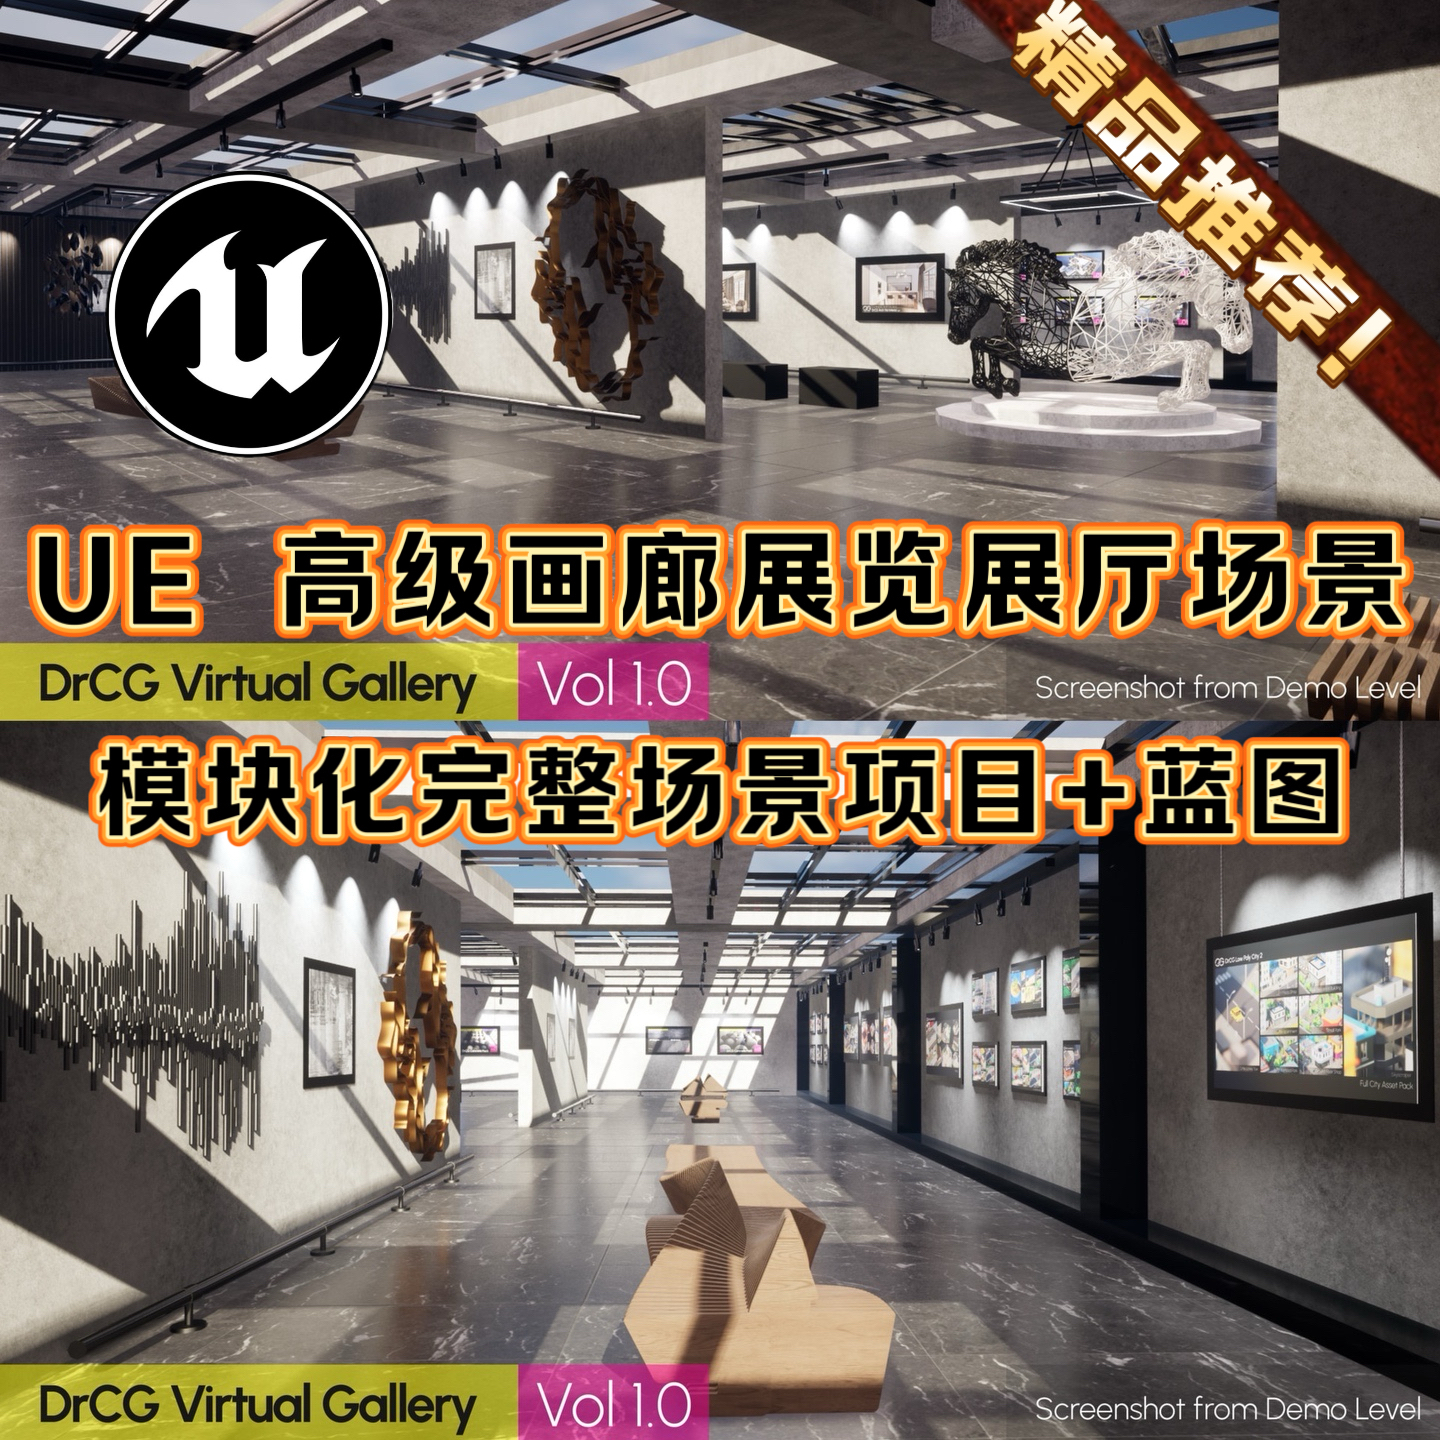 UE5虚幻引擎展厅设计场景展览会高级画廊展示空间布局完整项目